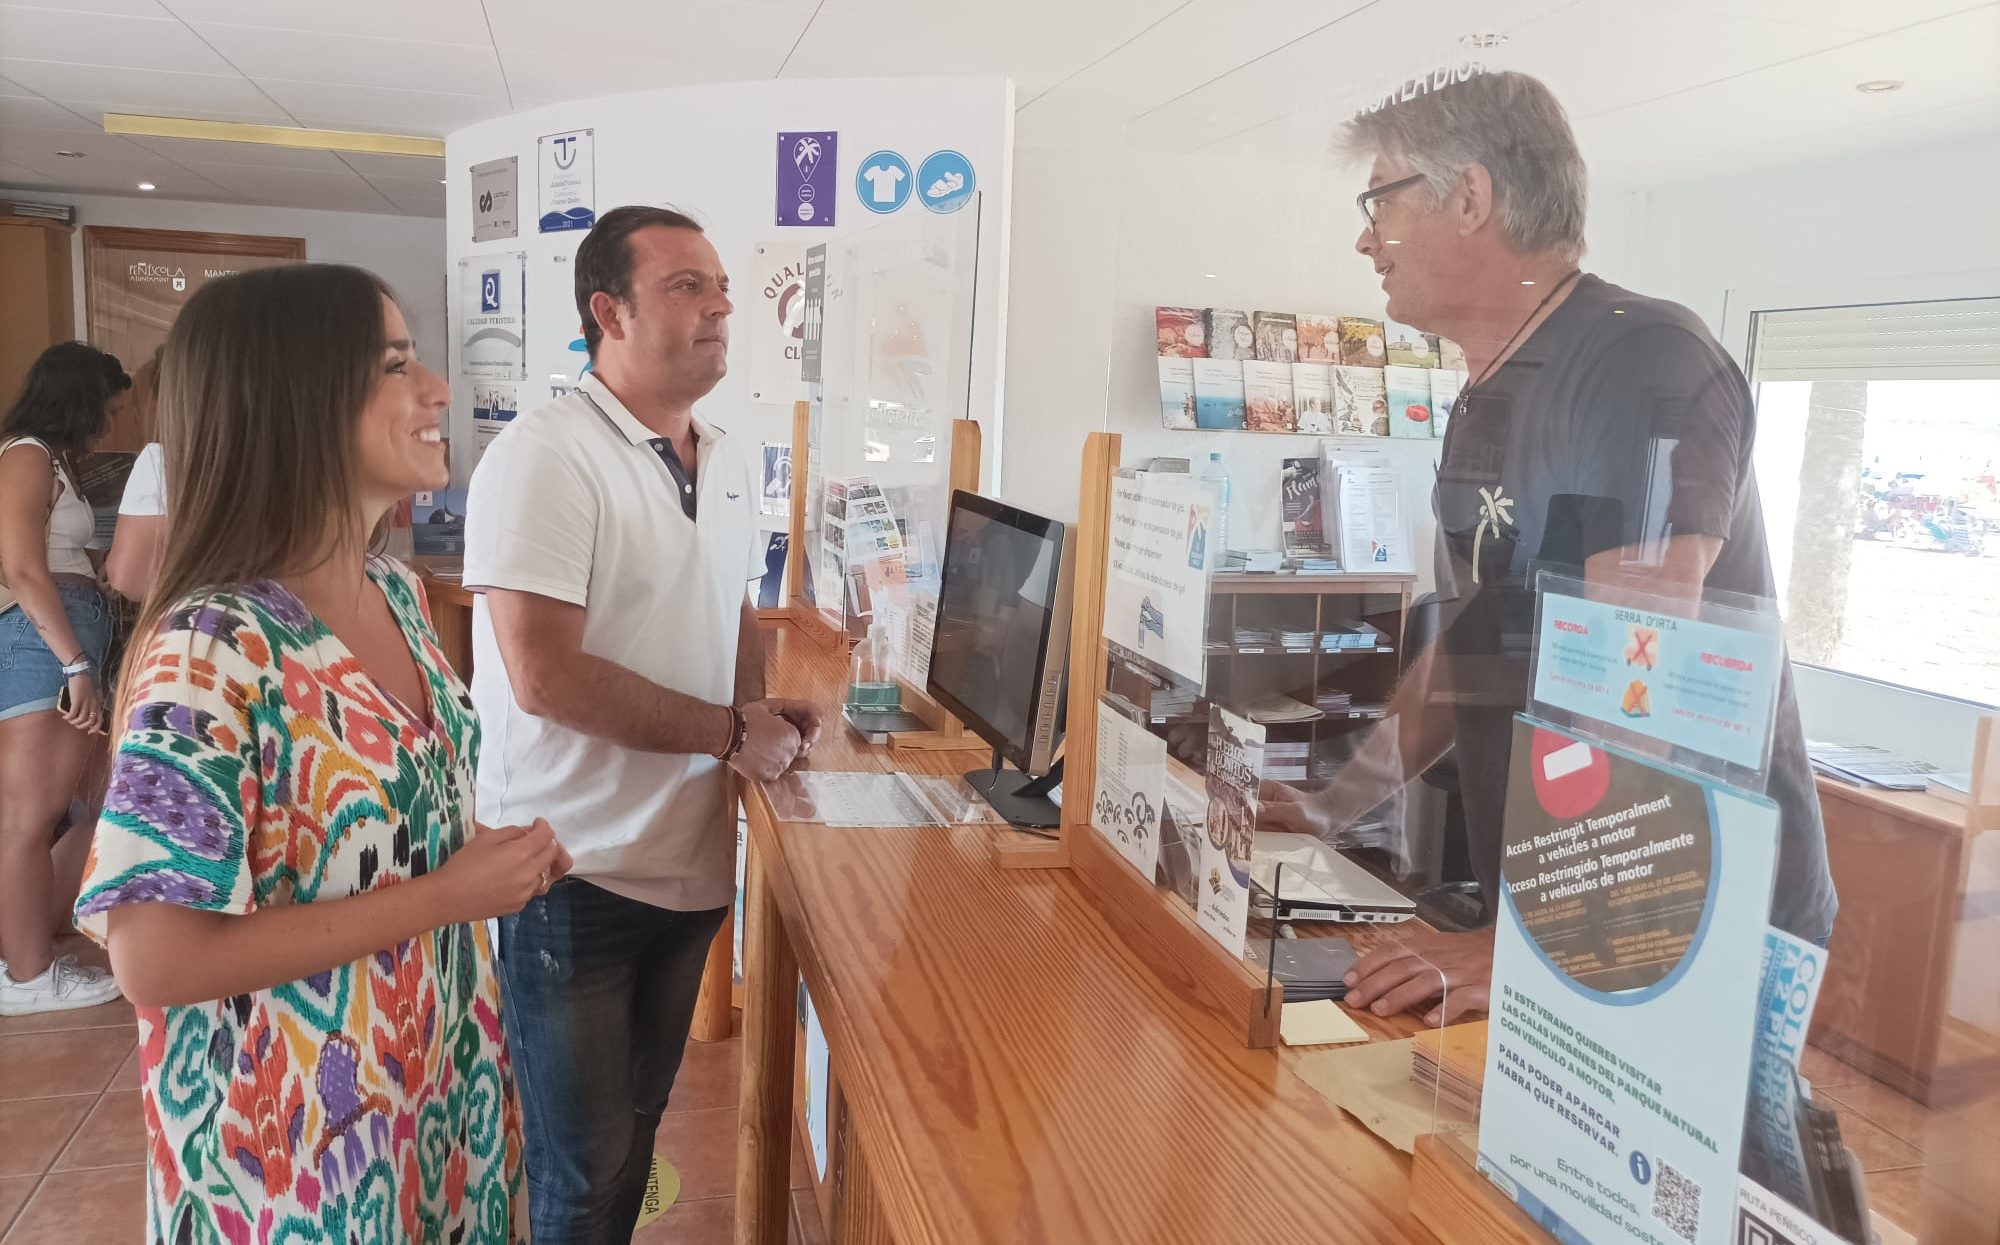 Peníscola ha atés al juliol més de 12.000 consultes en les oficines d'informació turística